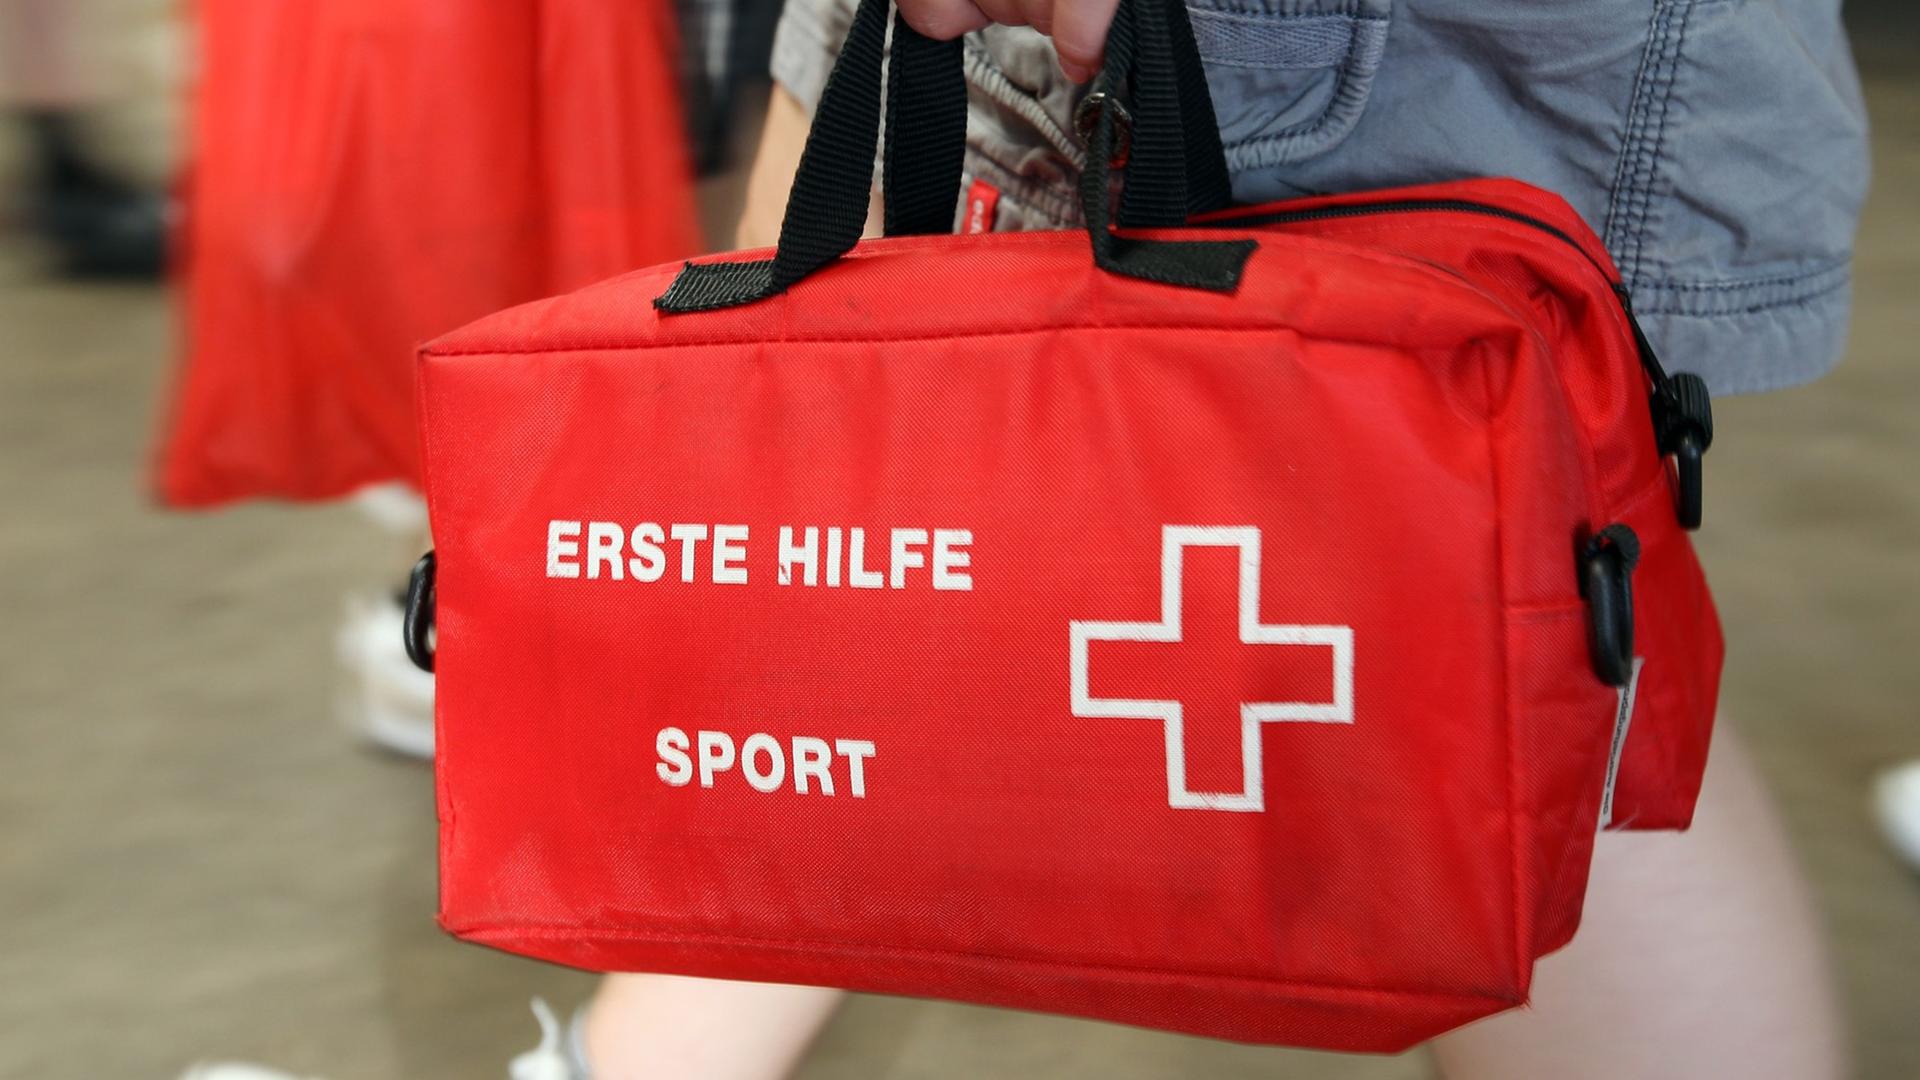 Eine Schülerin trägt am 18.6.2013 in Lingen eine Tsche für Erste Hilfe.